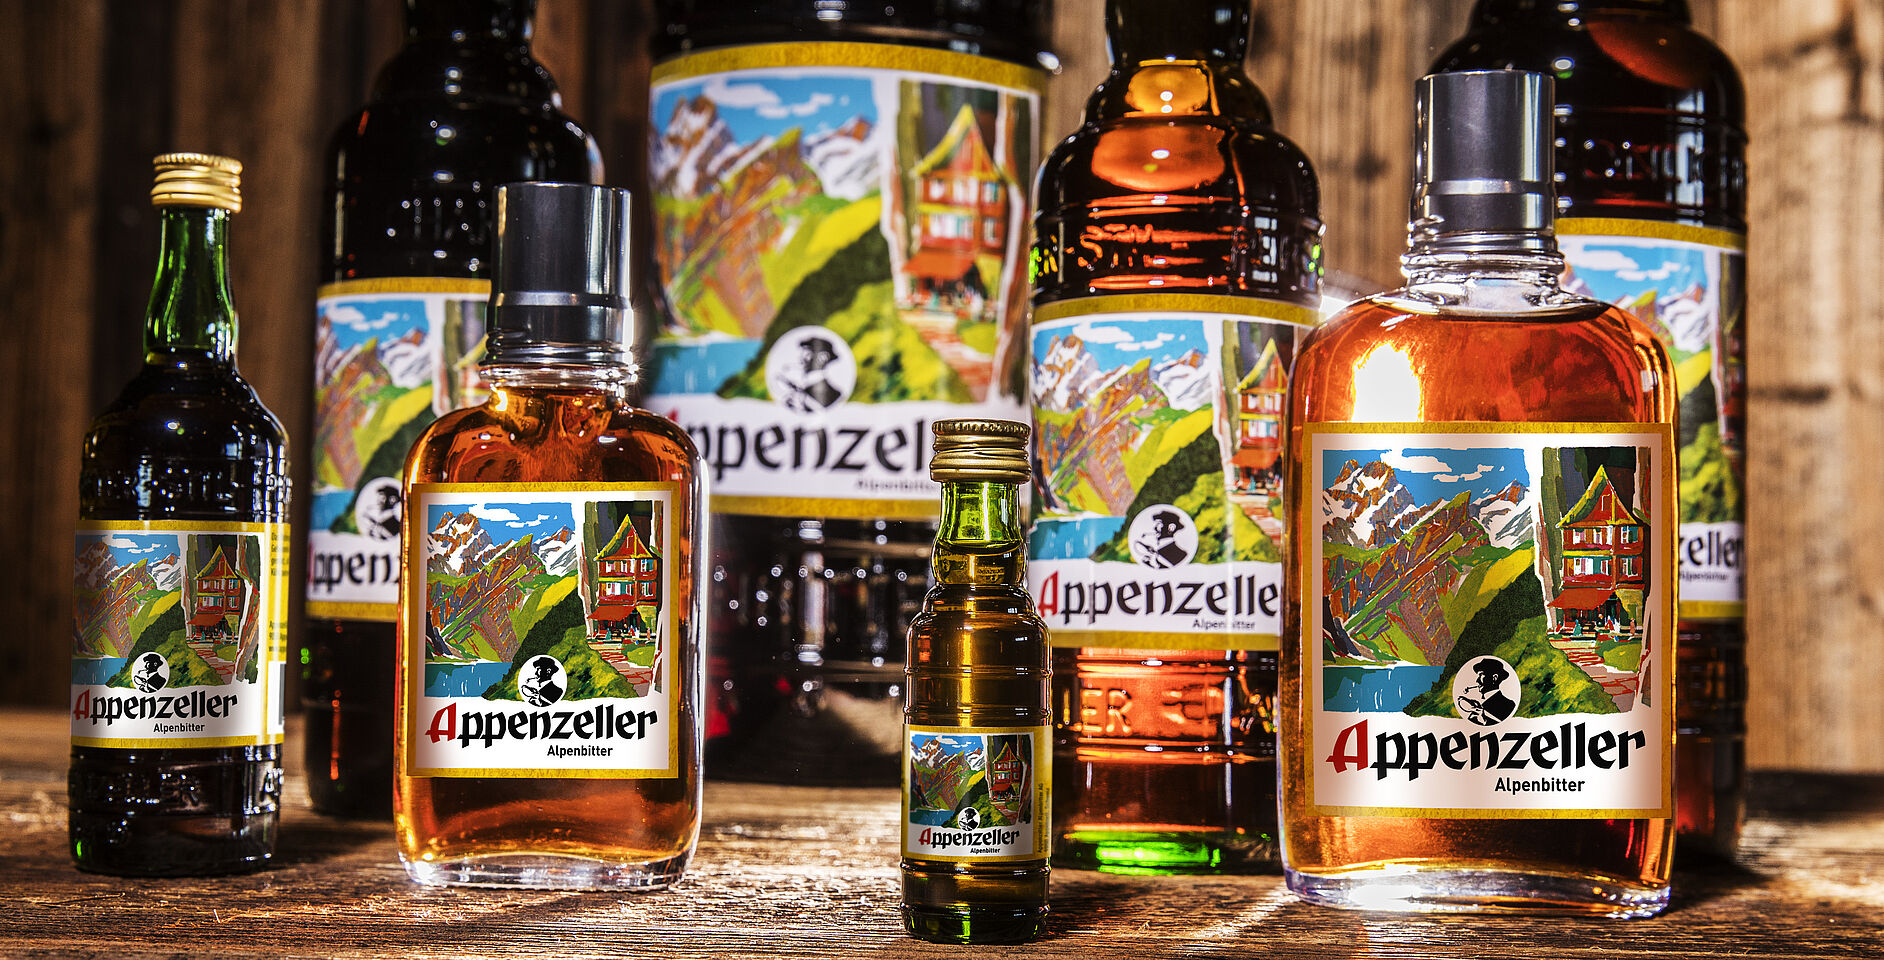 Appenzeller Alpenbitter - Products